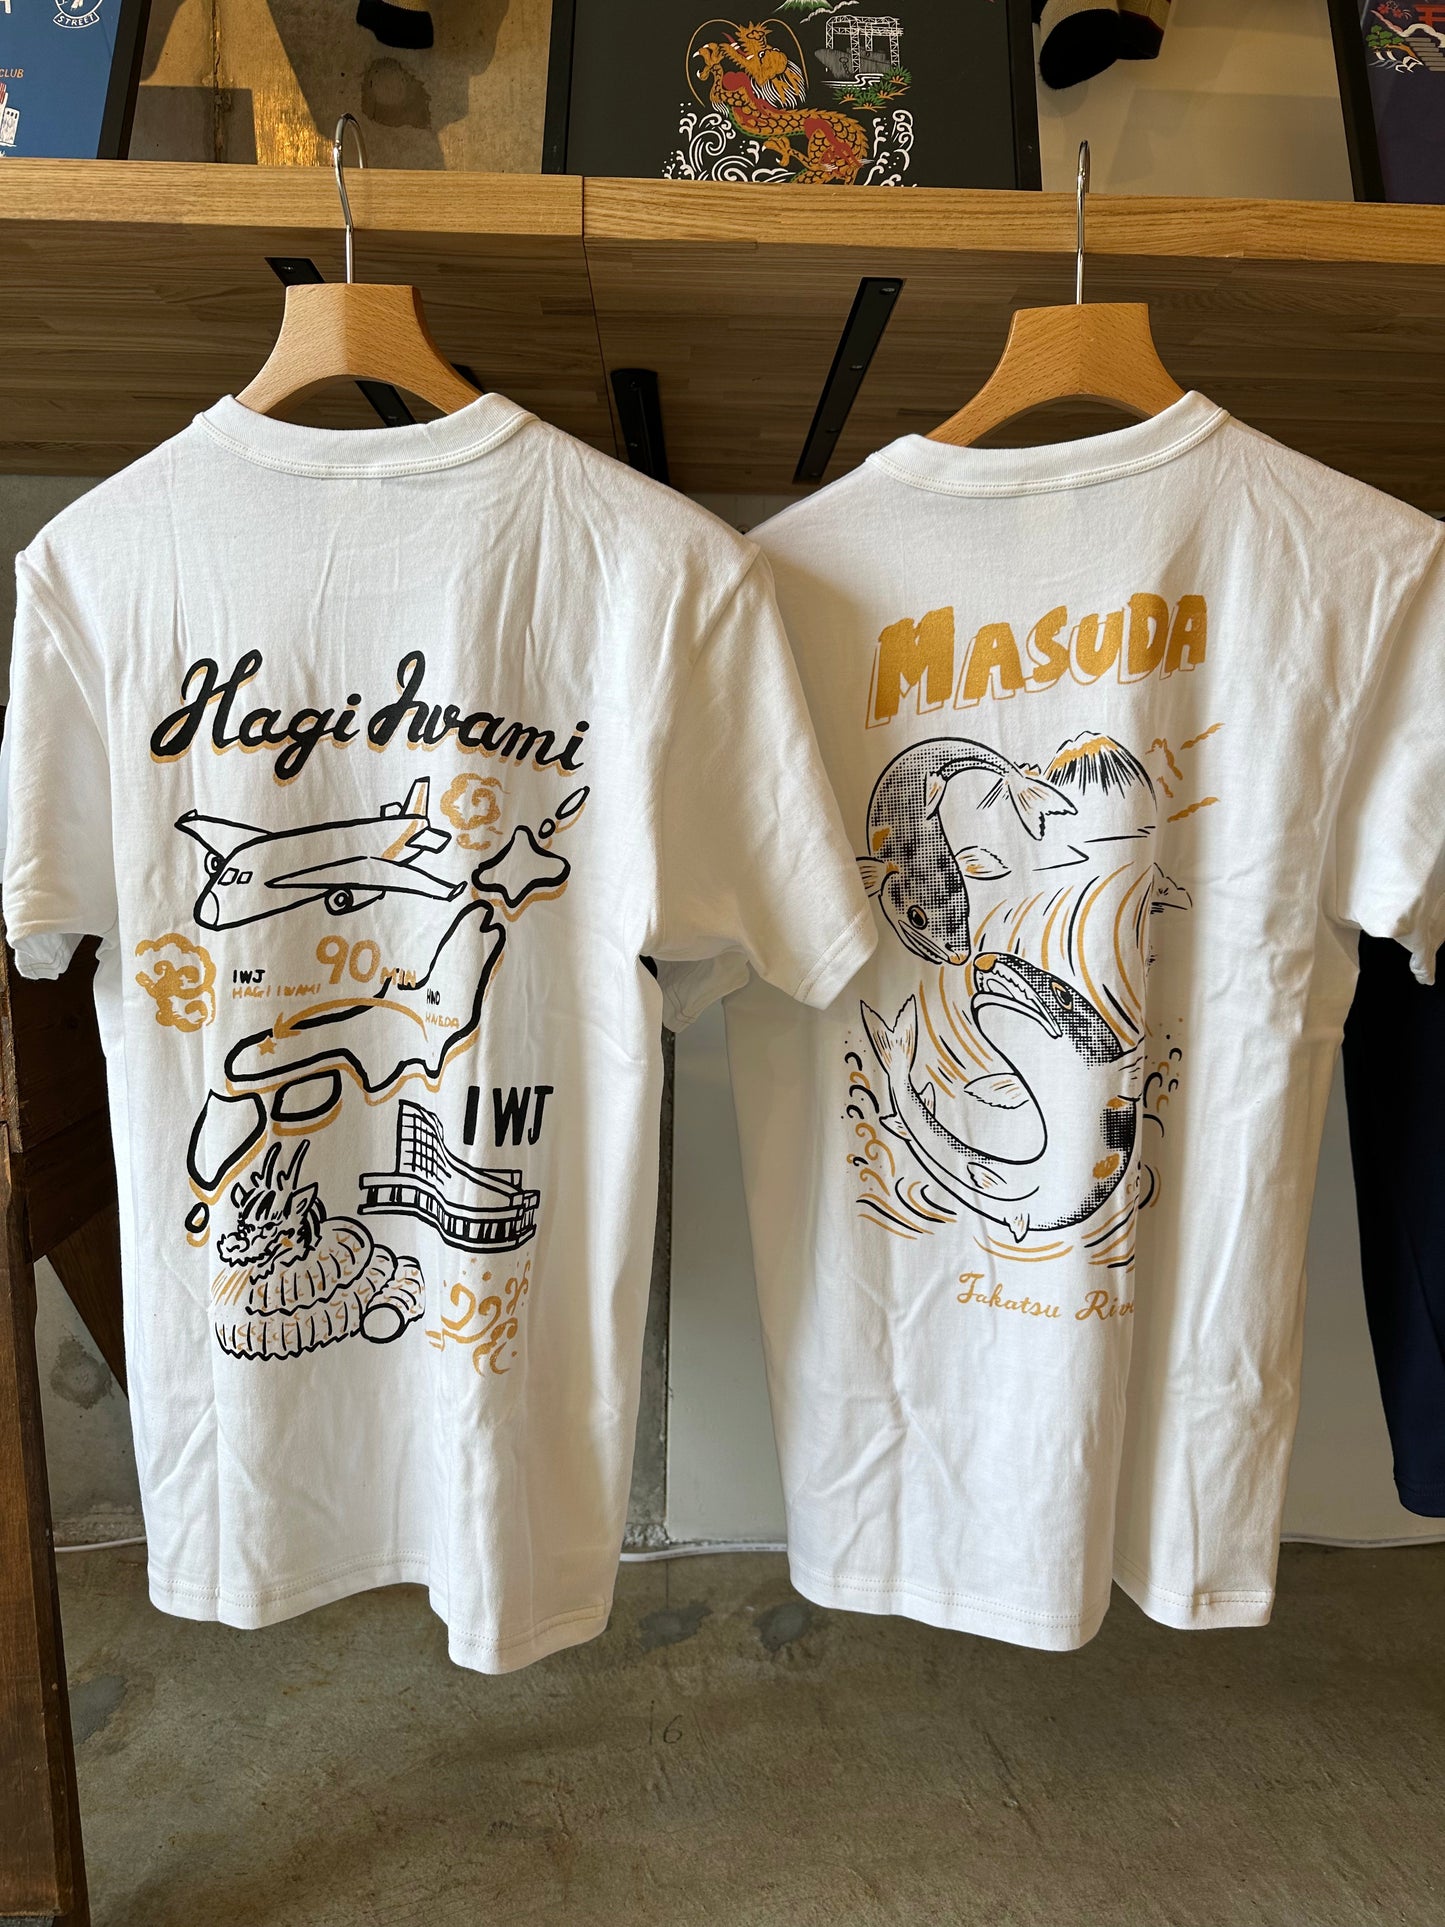 鮎と高津川 KIDS Tシャツ | Masuda Sukajan Graphics【納期2週間】